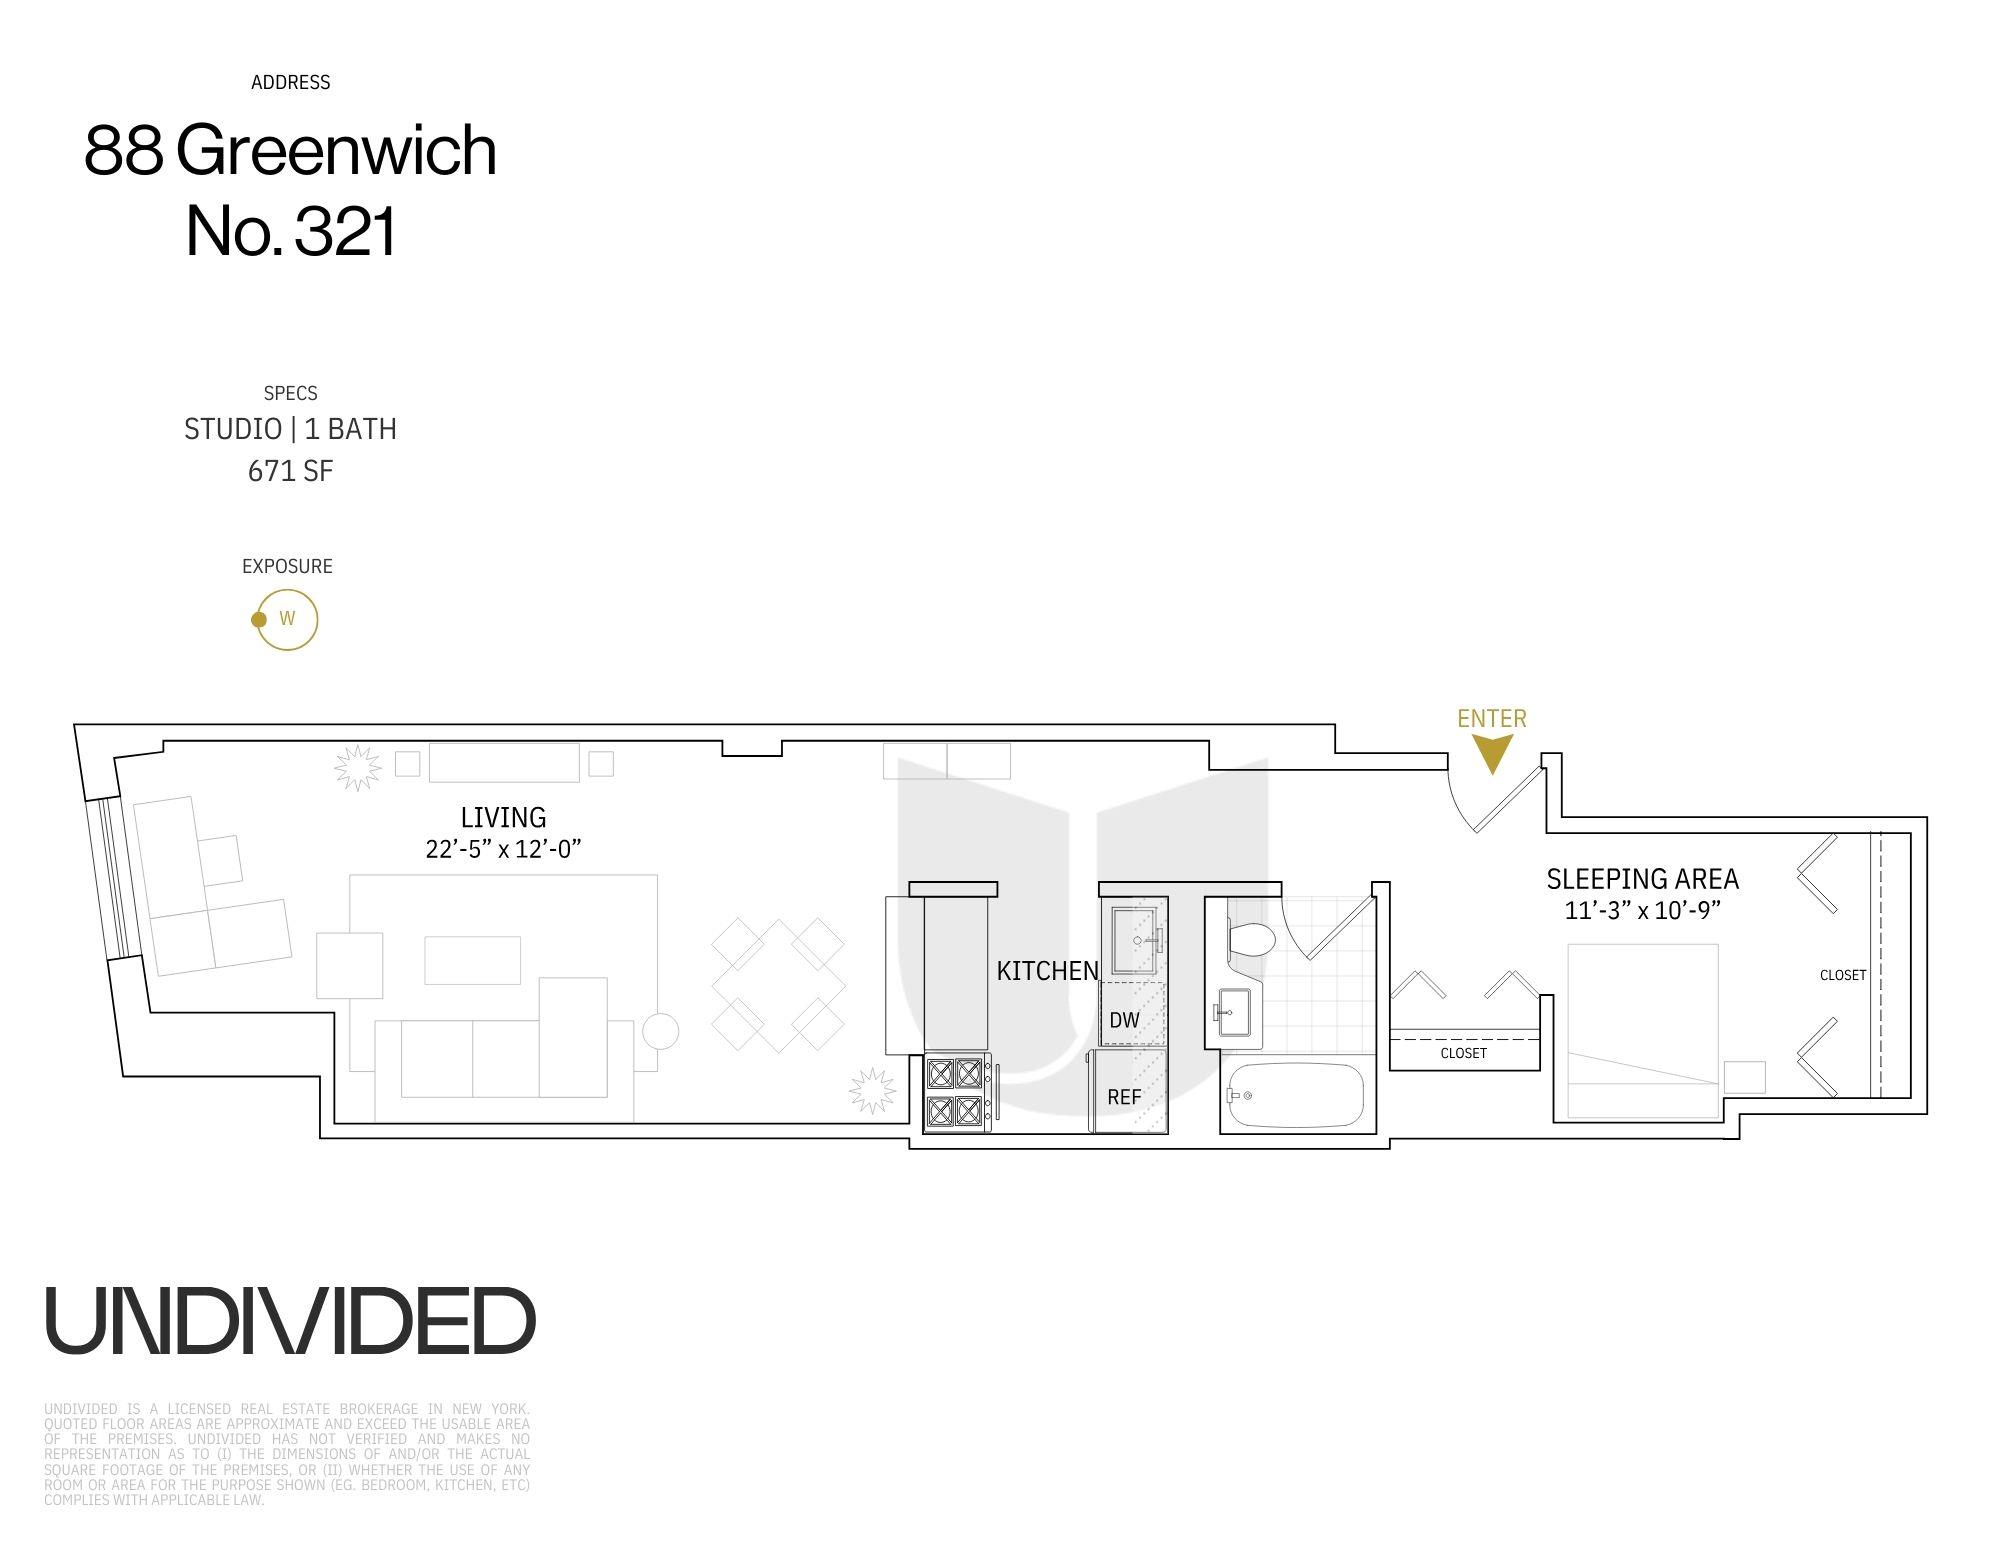 Floorplan for 88 Greenwich Street, 321